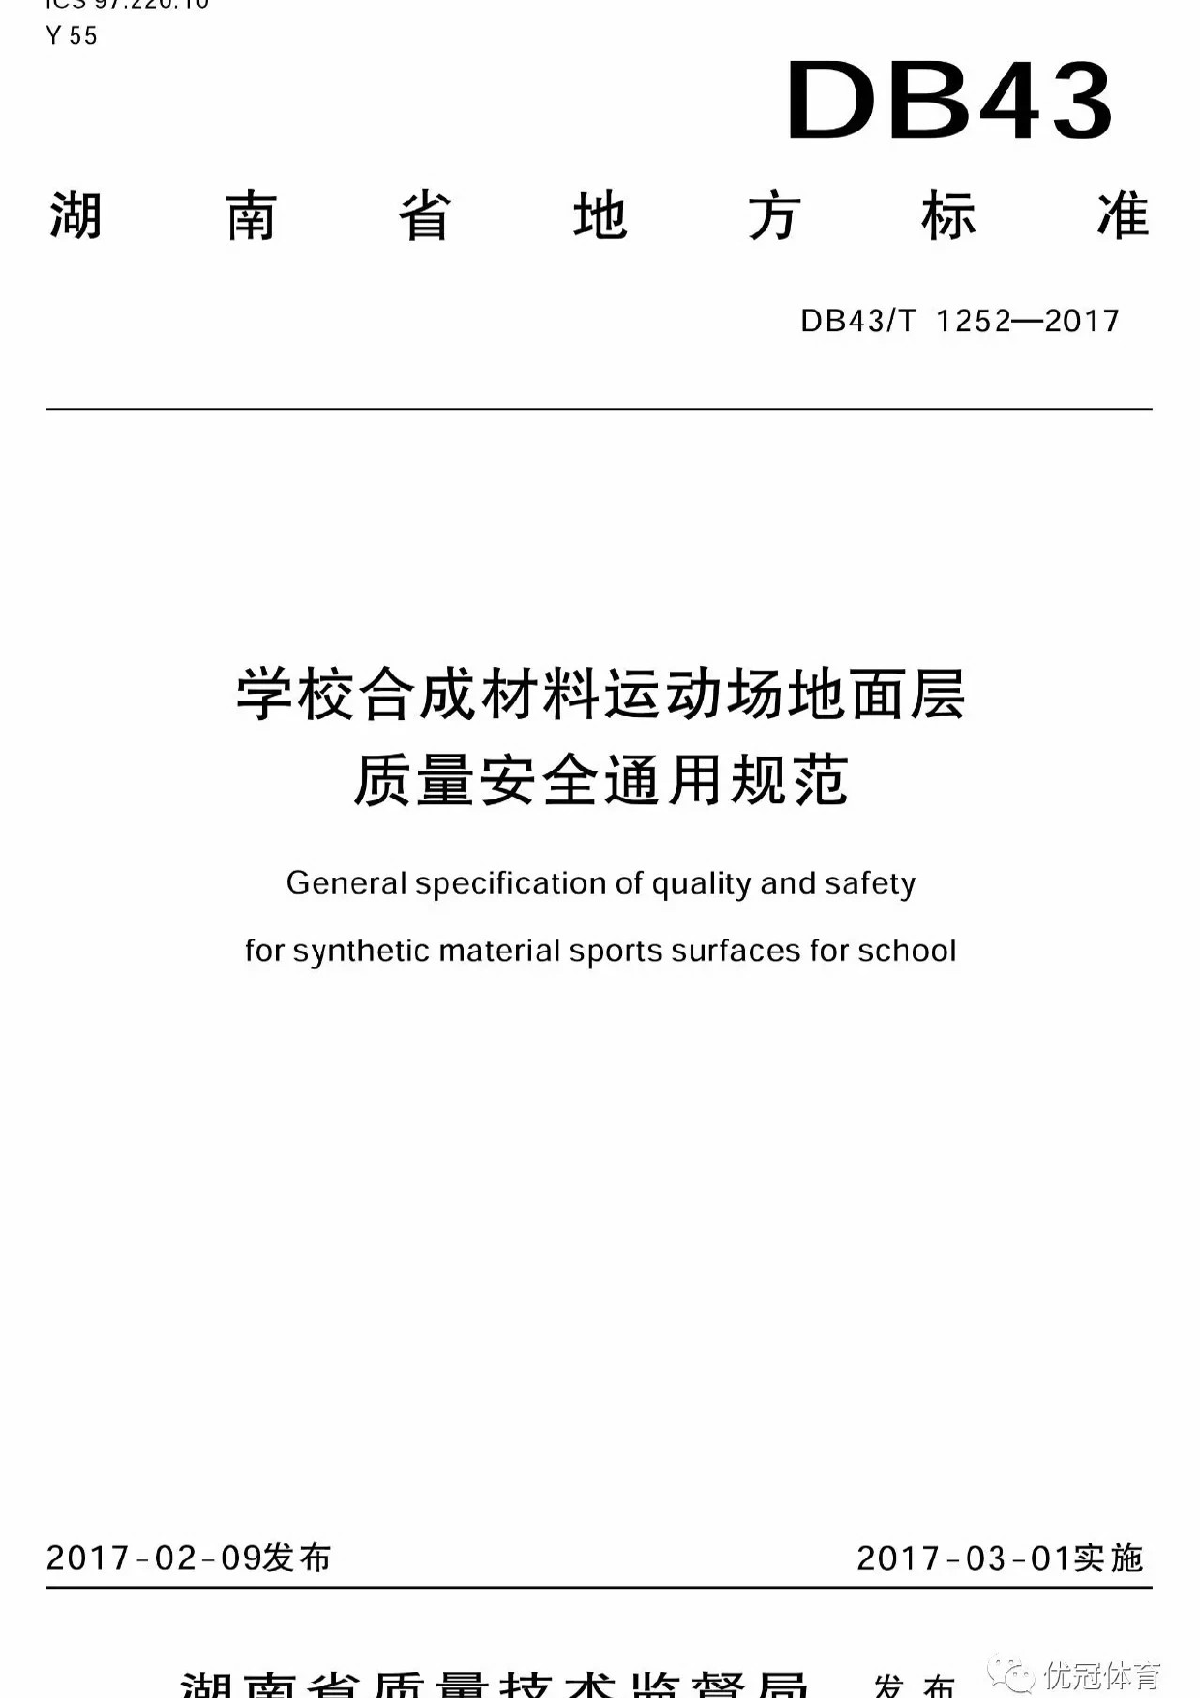 湖南地方标准DB43T1252-2017《学校合成材料运动场地面层质量安全通用规范》